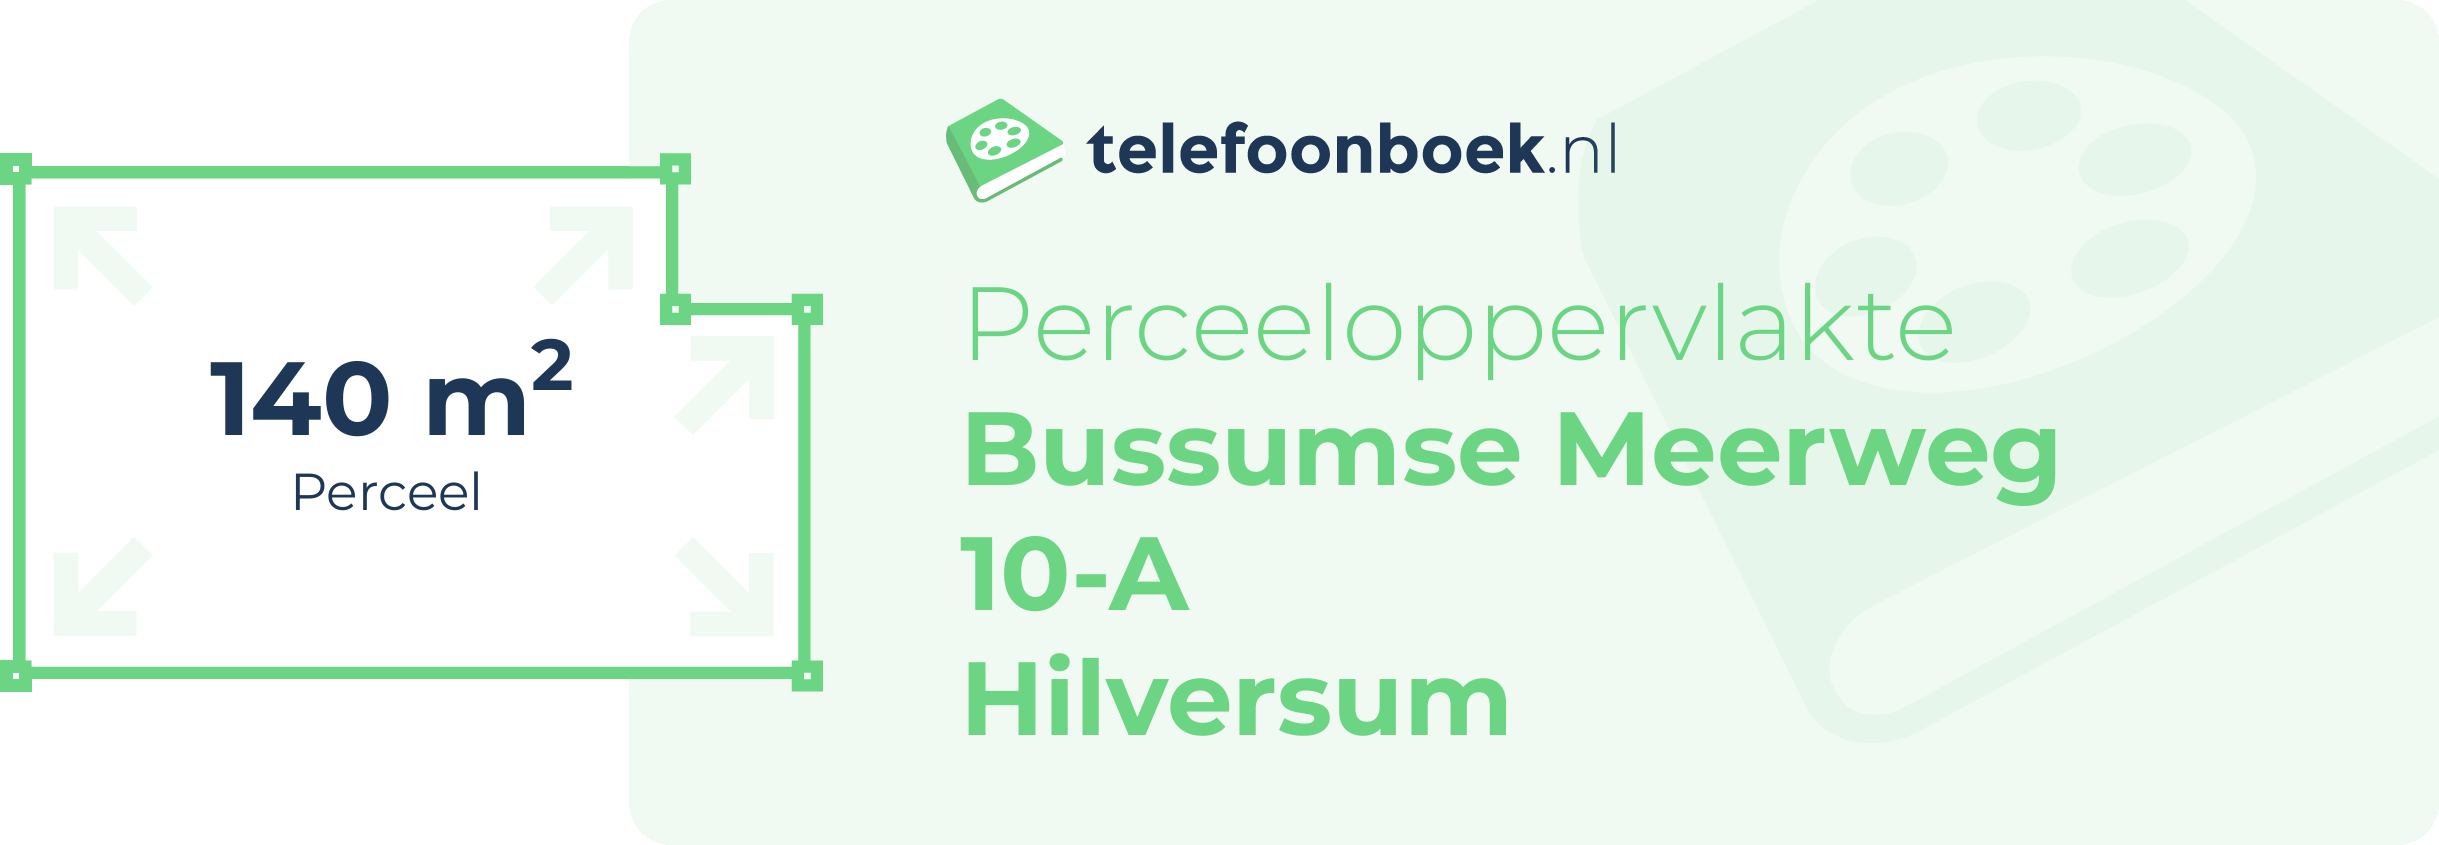 Perceeloppervlakte Bussumse Meerweg 10-A Hilversum